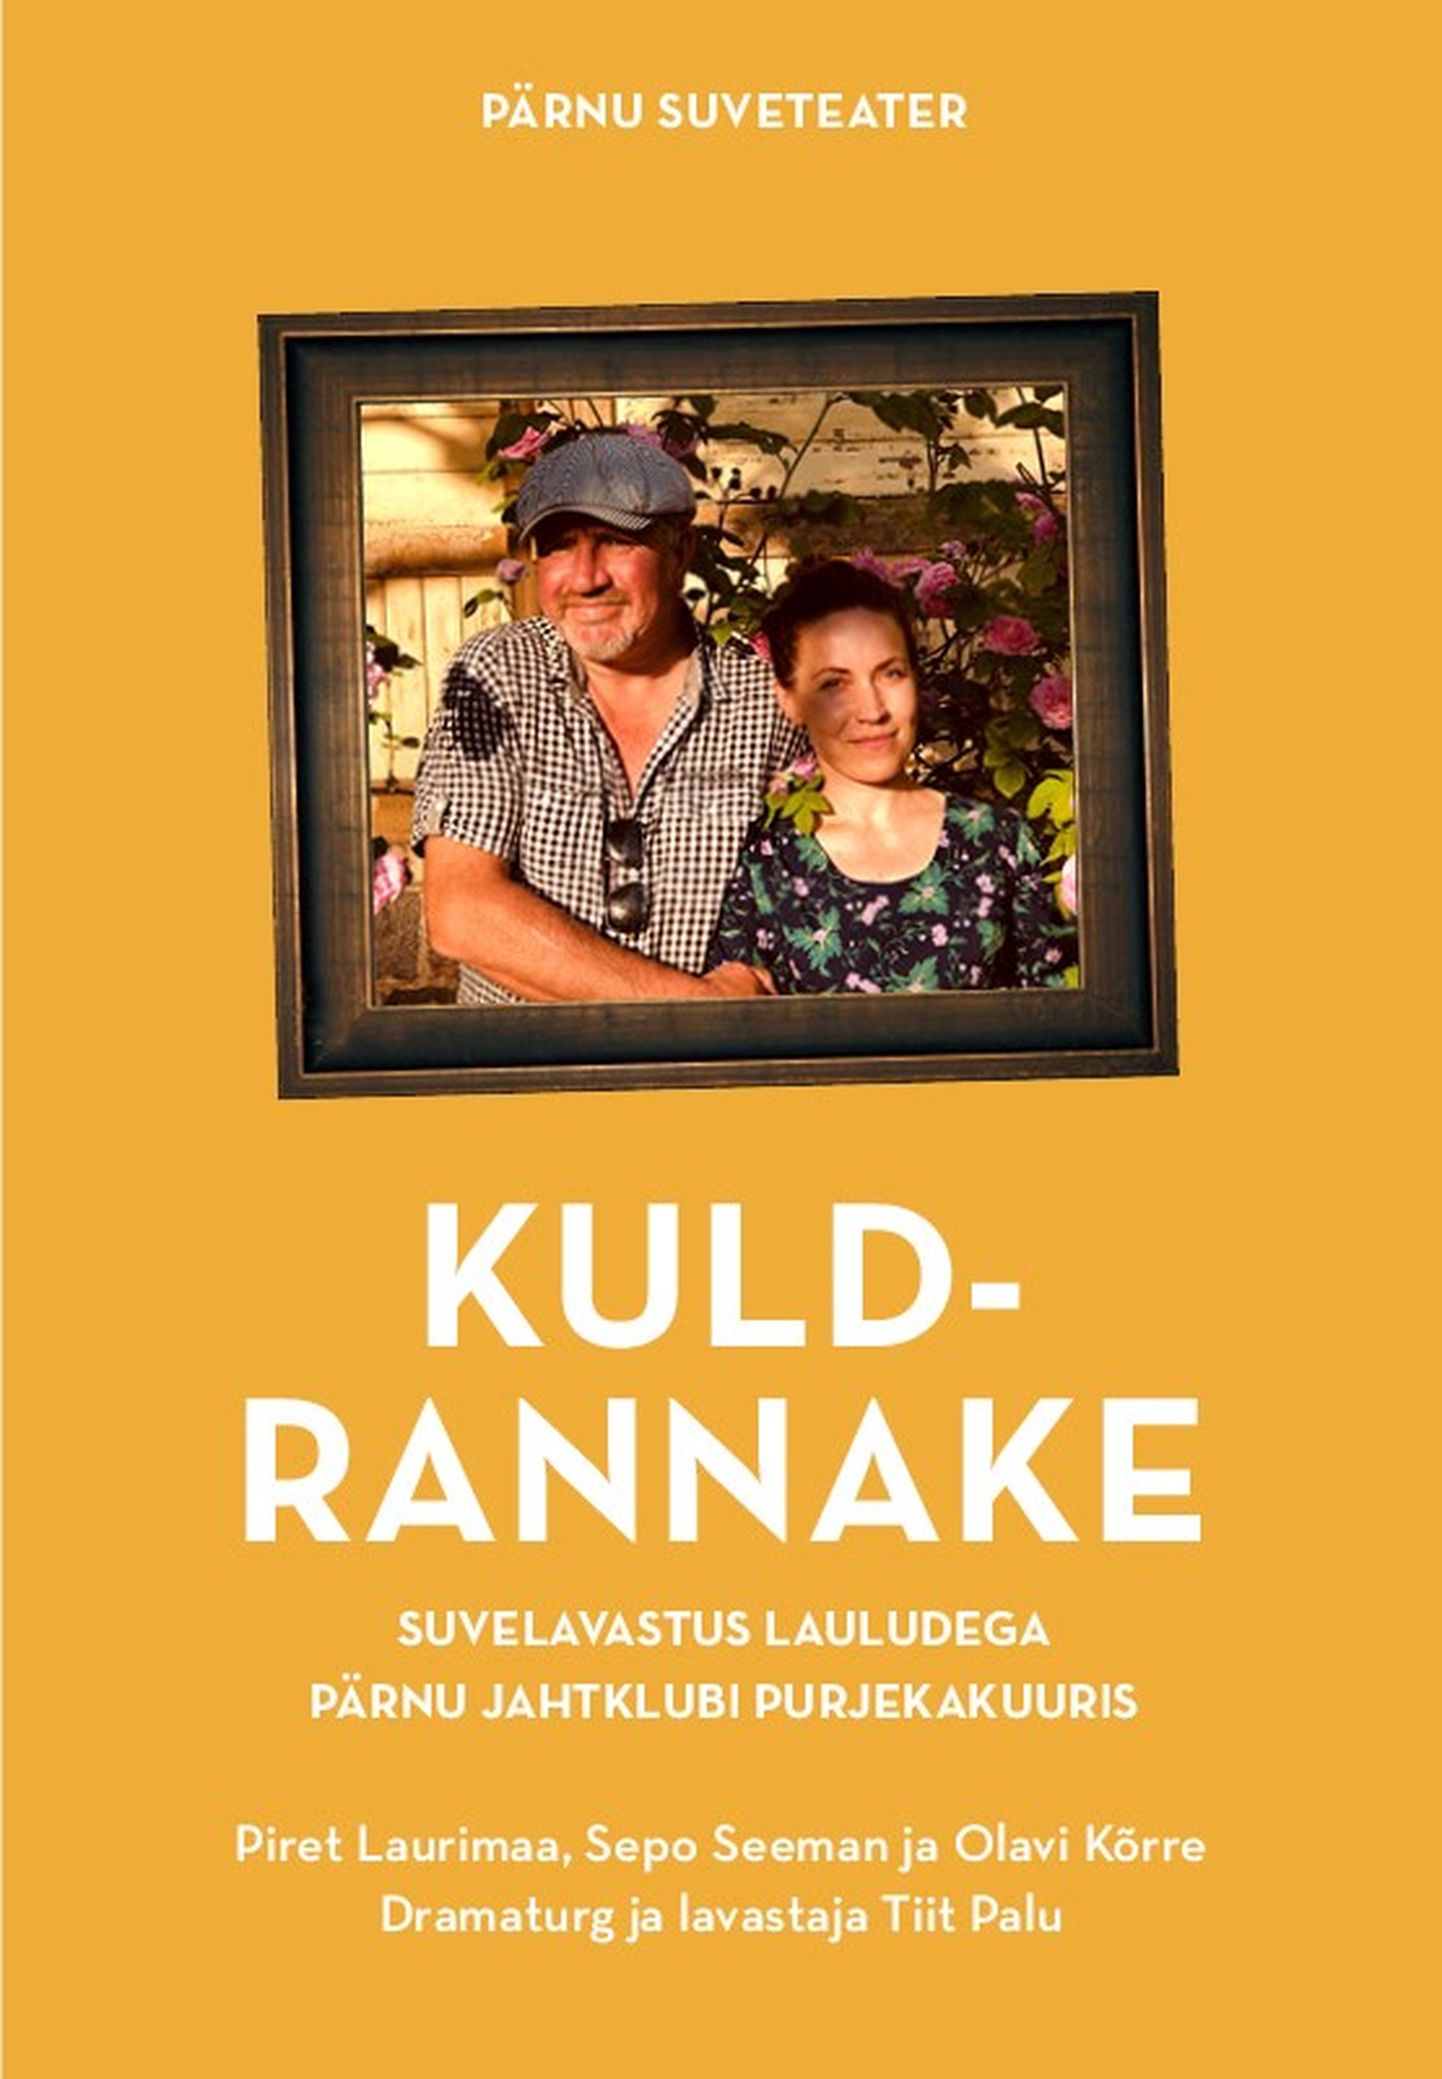 Pärnu Suveteater toob 8. juulil Pärnu Jahtsadama purjekakuuris välja lavastuse «Kuldrannake».